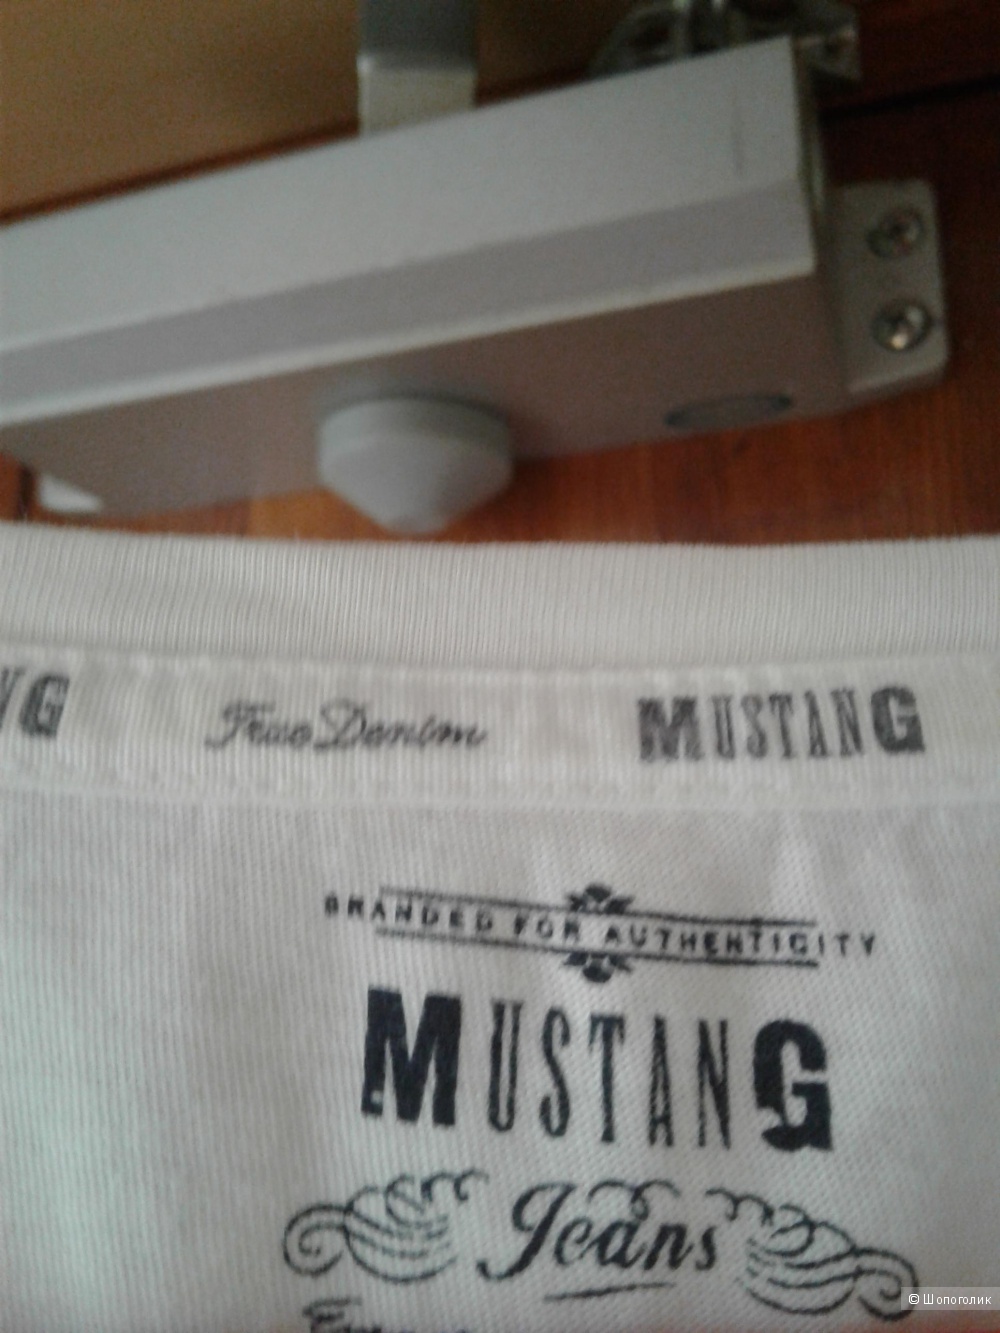 Футболка Mustang маркировка М